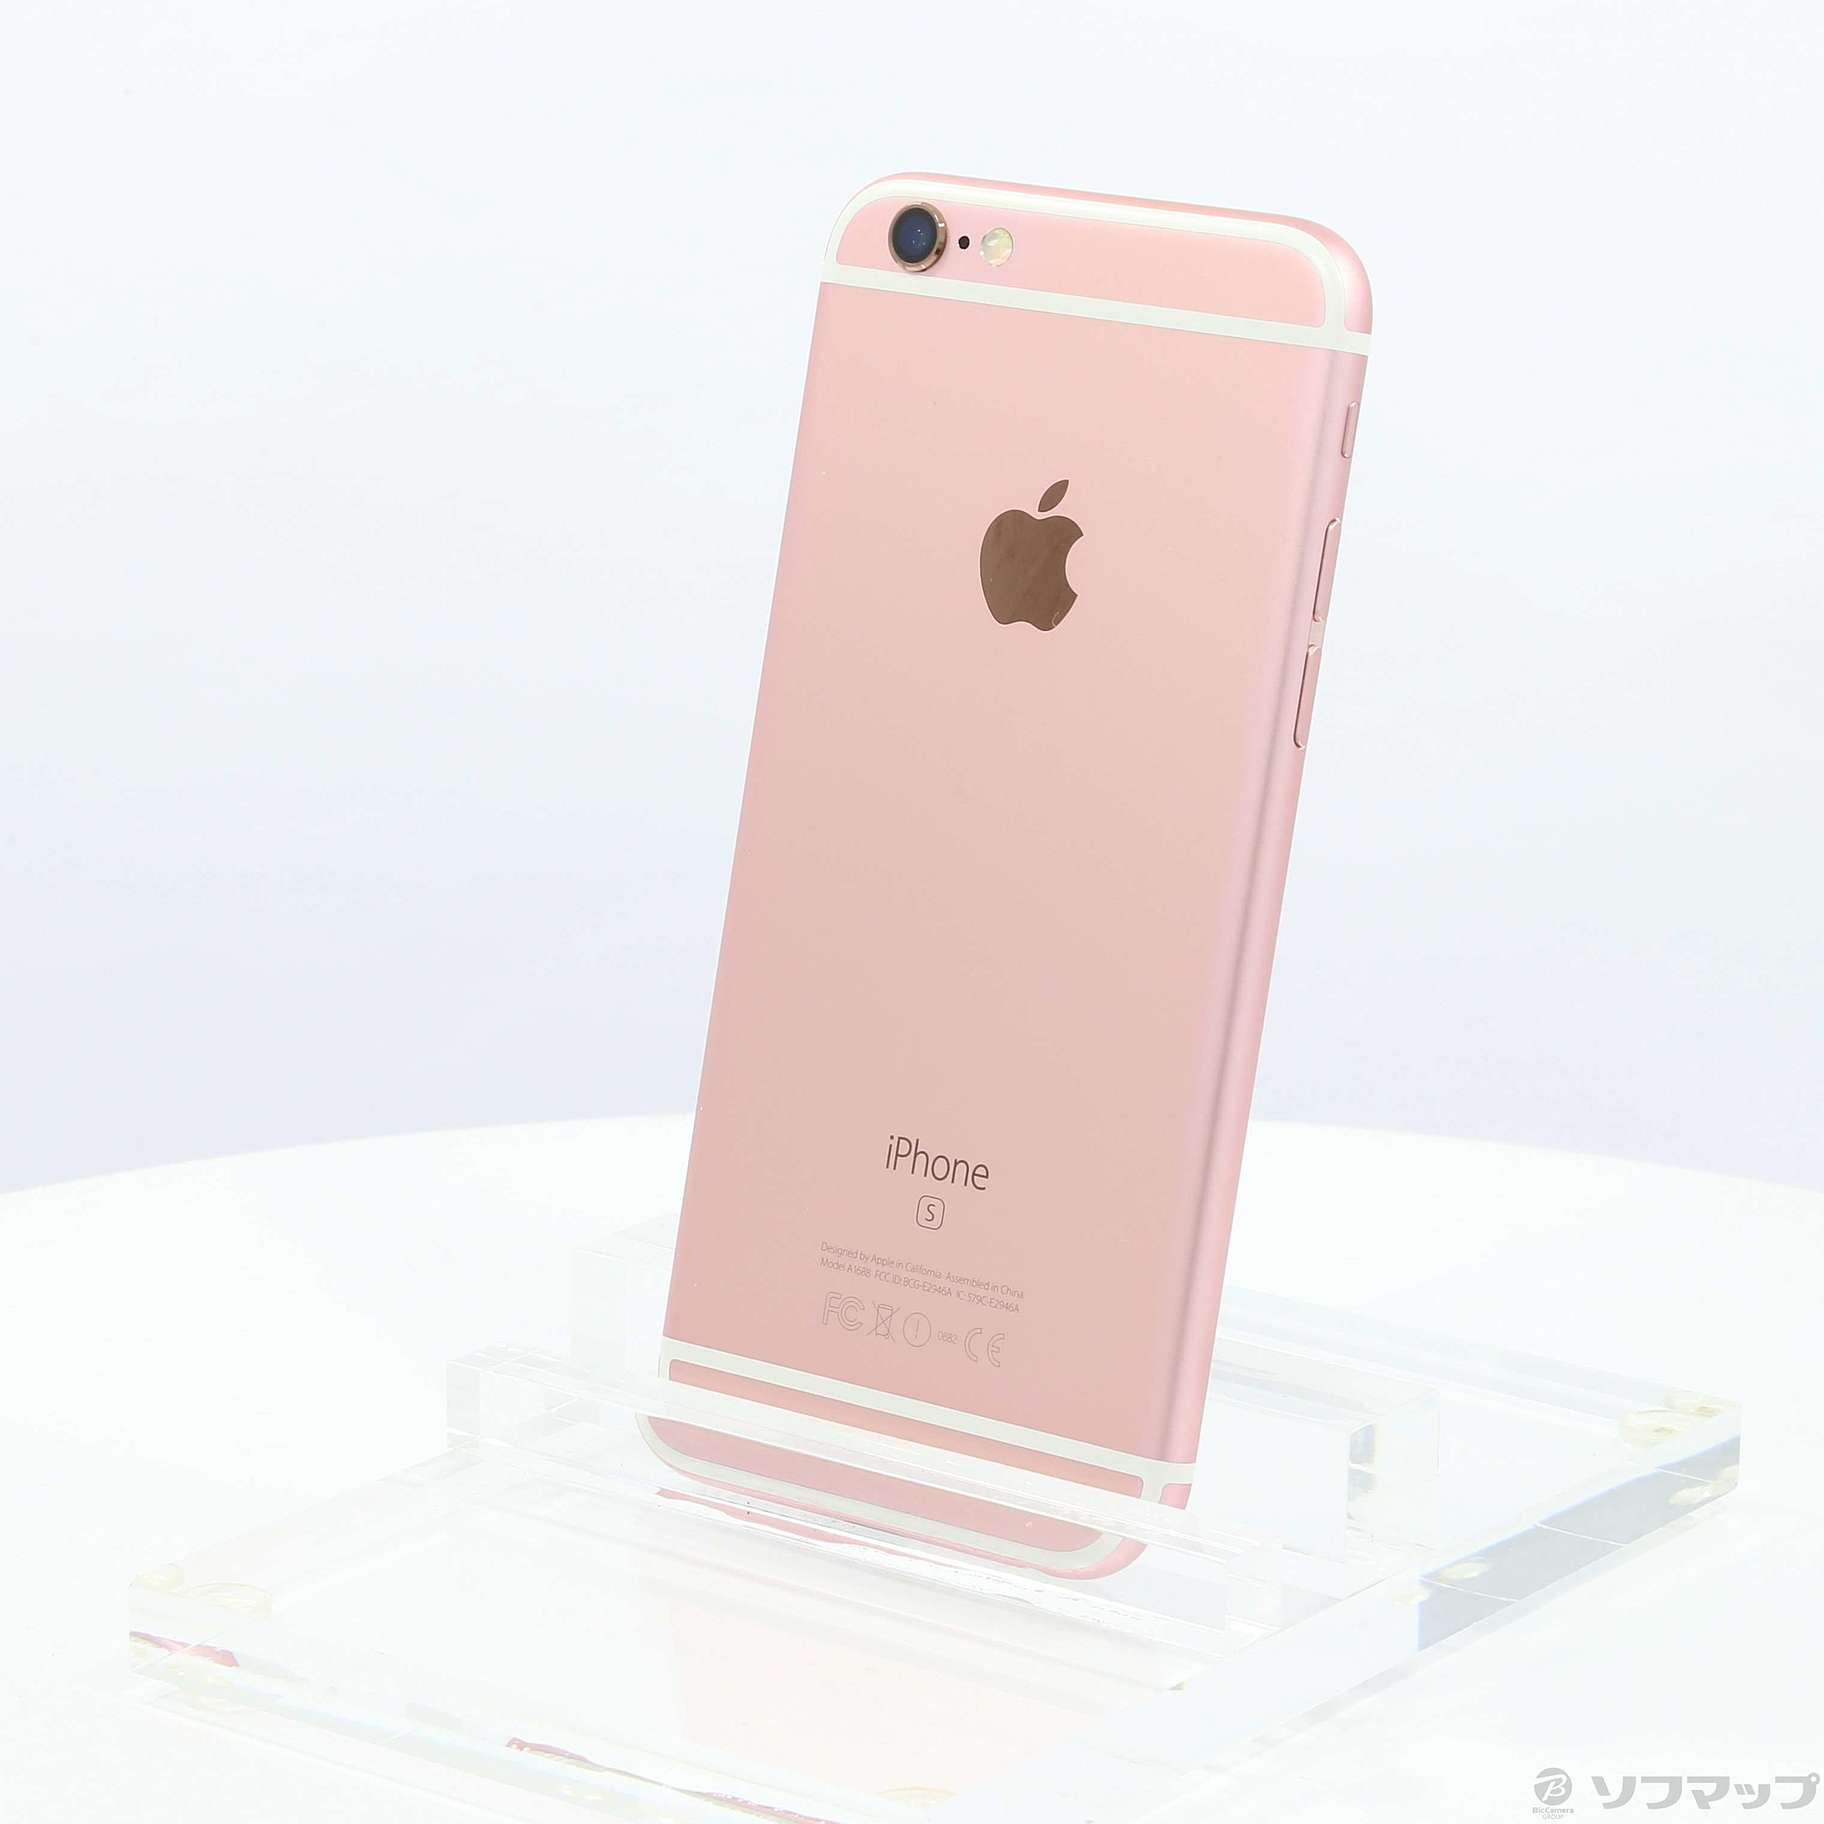 スマートフォン/携帯電話iPhone6s 16GB ピンクゴールド